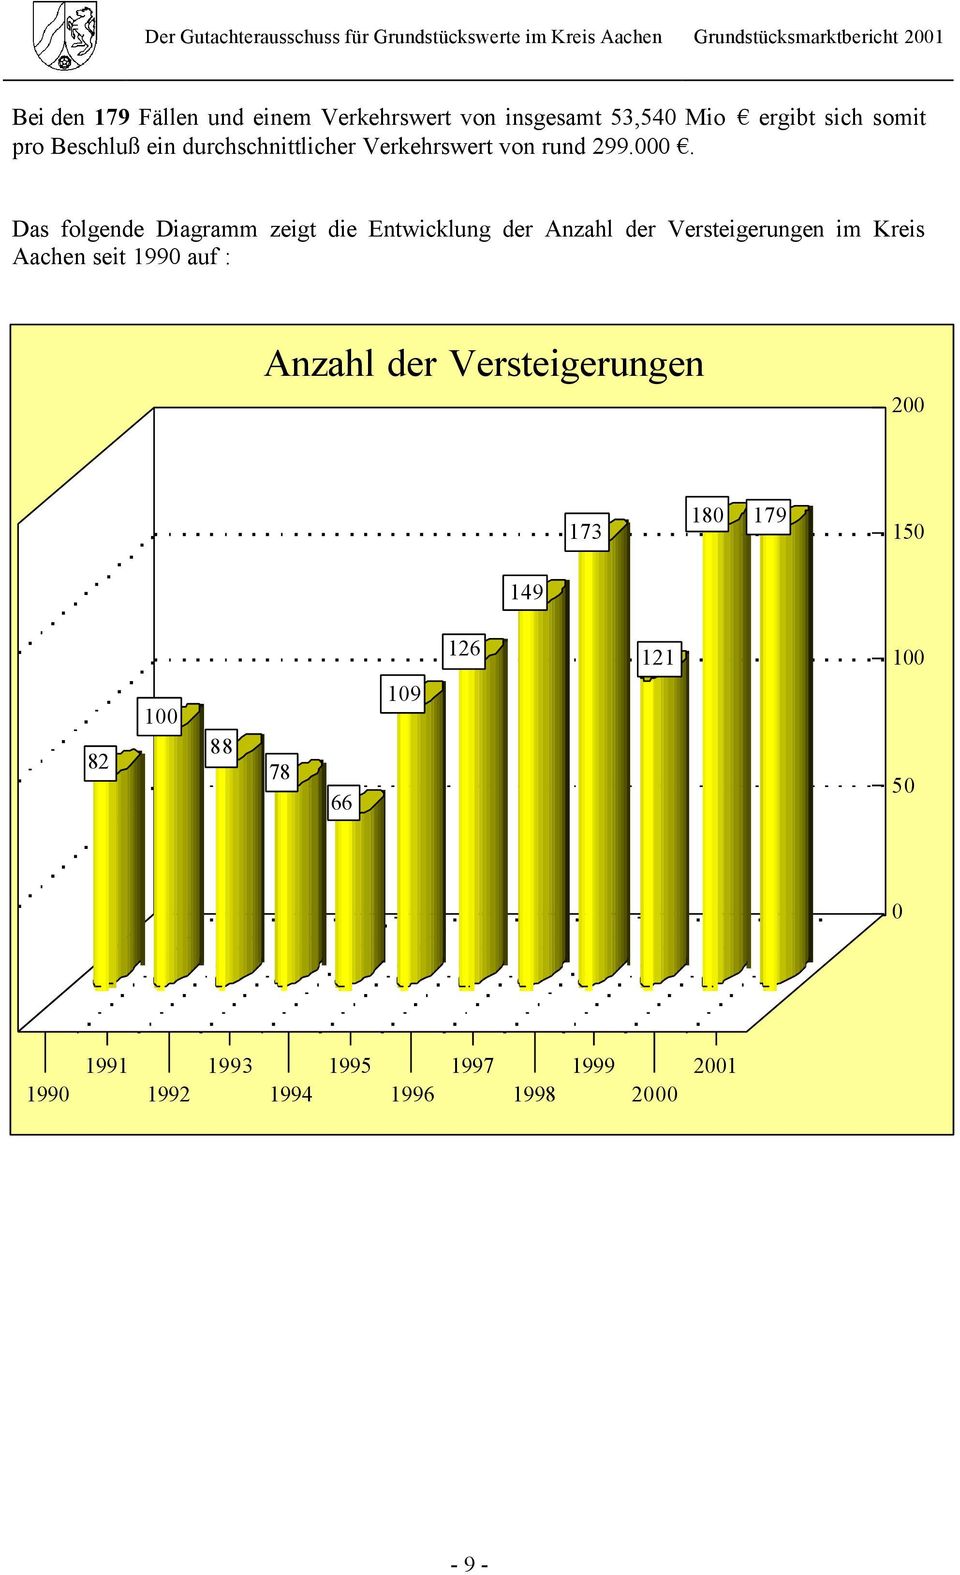 Das folgende Diagramm zeigt die Entwicklung der Anzahl der Versteigerungen im Kreis Aachen seit 1990